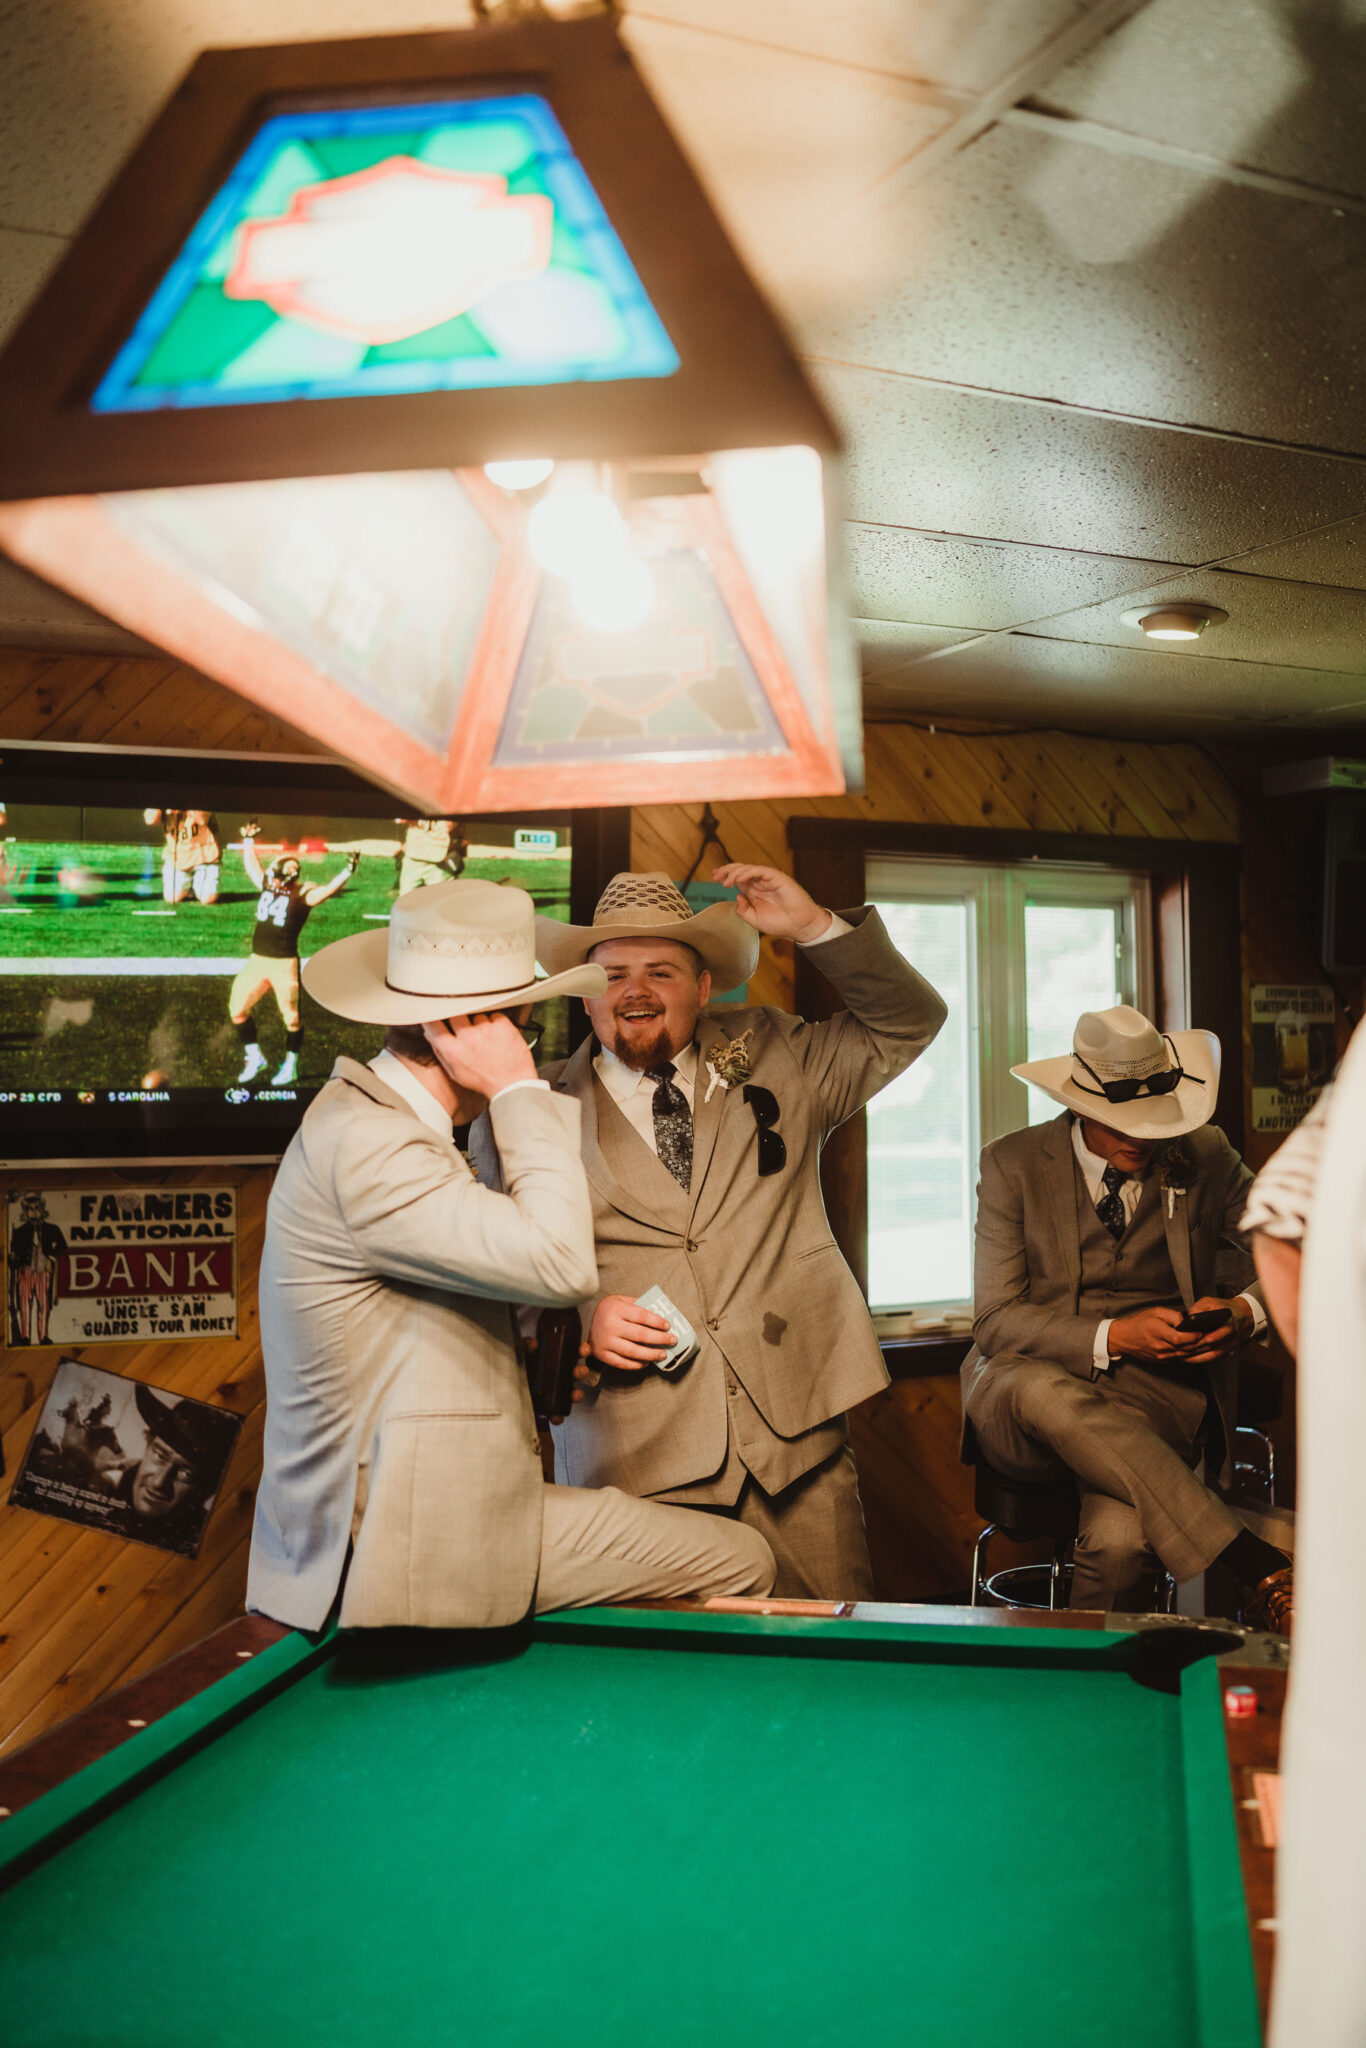 Cowboy groomsmen celebrate together at a Wisconsin wedding venue bar. Cowboy wedding Cowboy hats Groomsmen photos Wisconsin wedding reception #weddingplanning #weddingtimeline #diywedding #wisconsinweddingphotographer #wisconsinchurchwedding